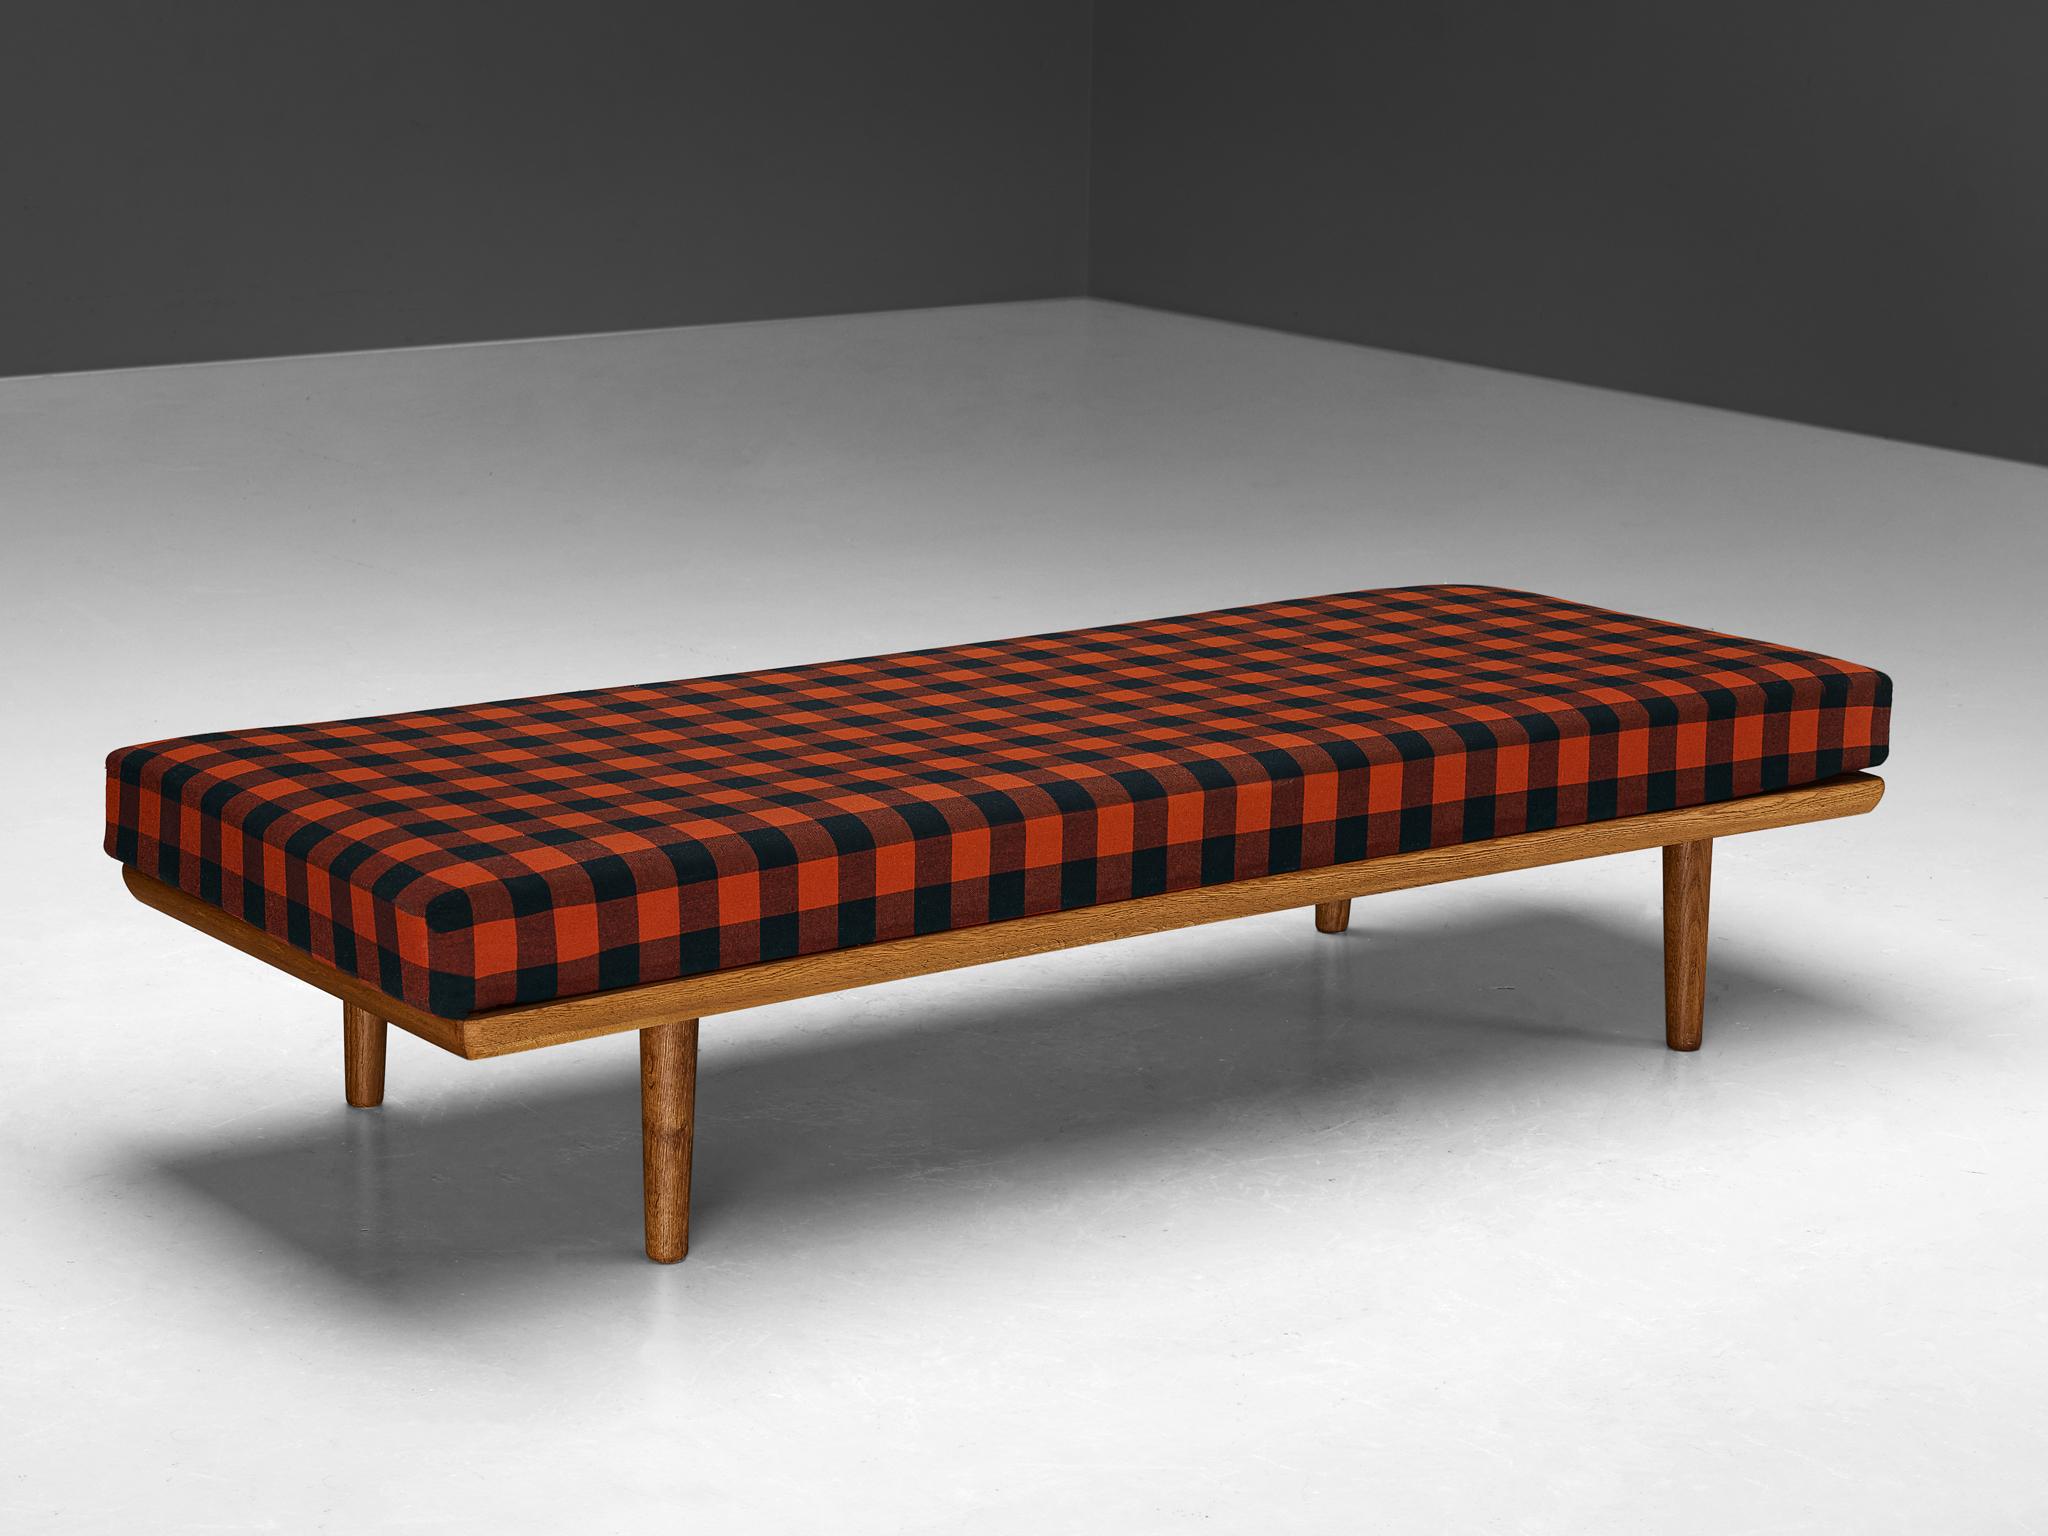 Lit de jour, chêne, teck Scandinavie, 1960s

Un lit simple et minimaliste fabriqué en Scandinavie dans les années 1960. La particularité de ce meuble réside dans le matelas qui est revêtu d'un tissu à carreaux rouge et noir. La construction est